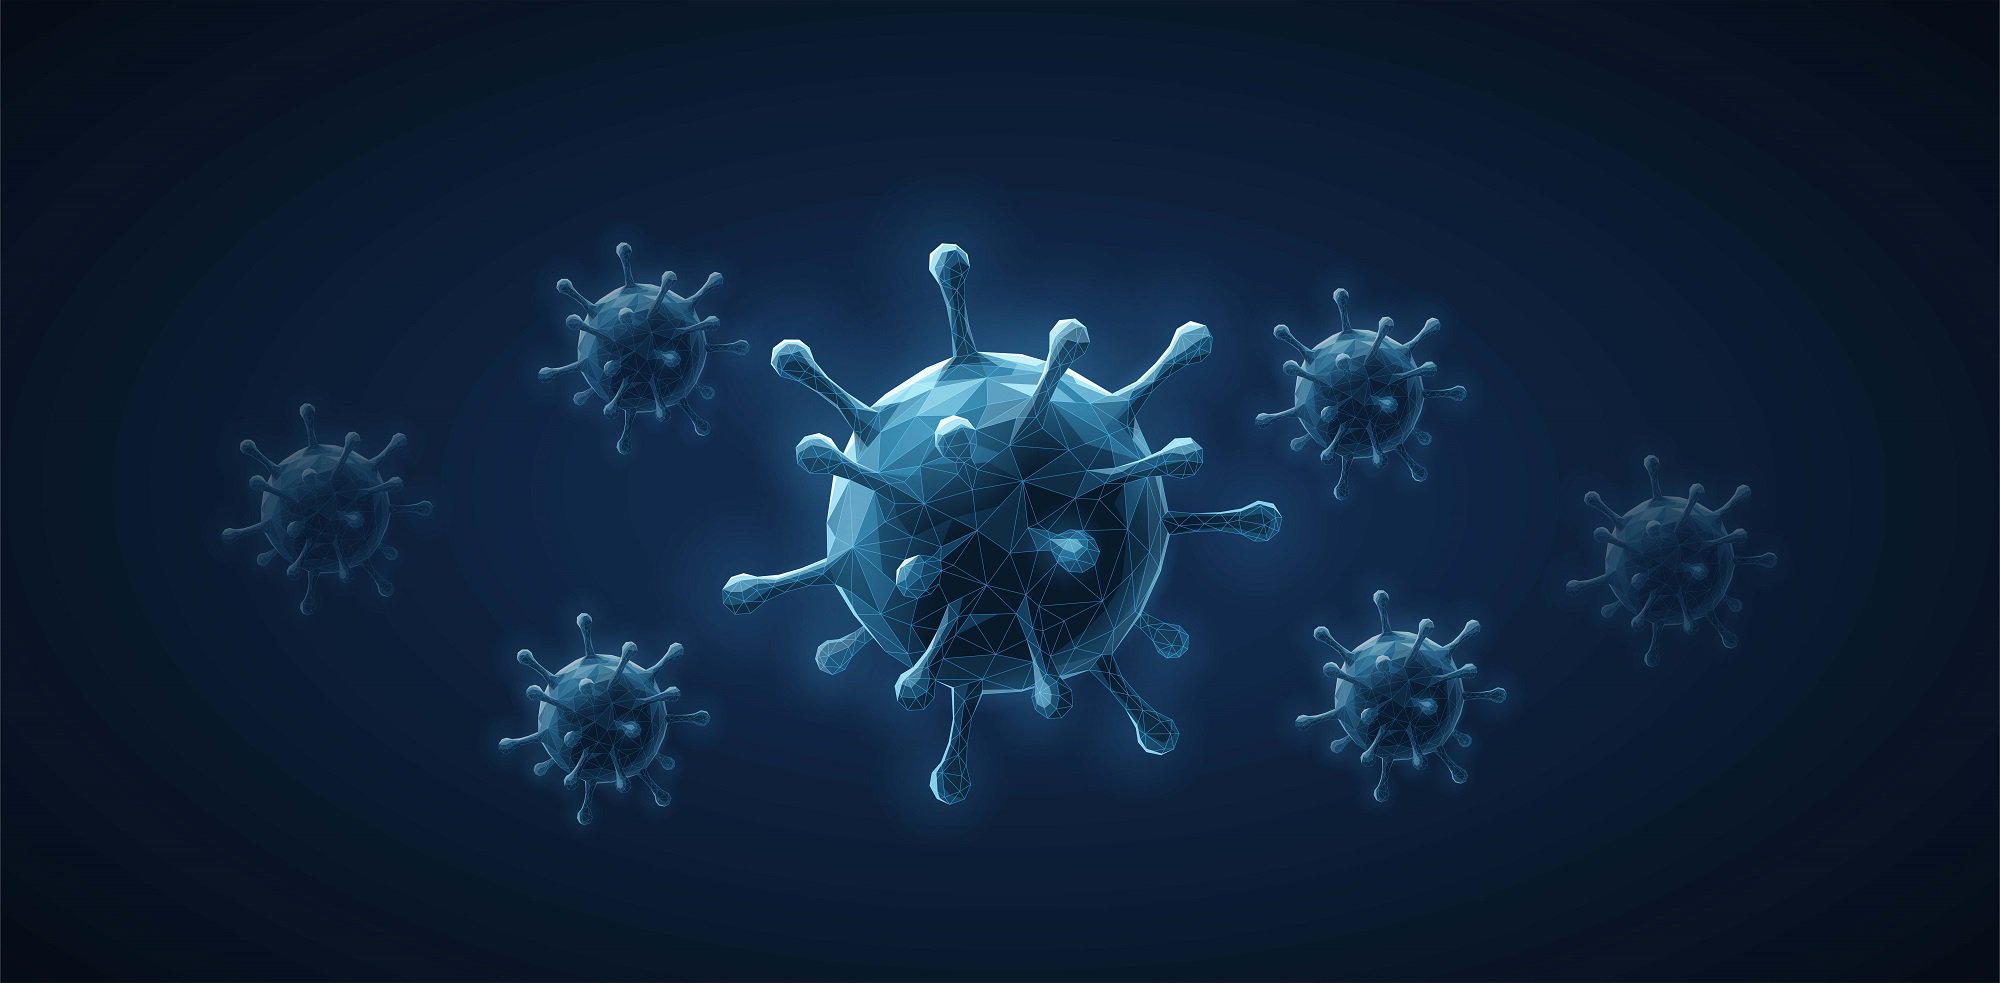 Myths on Coronavirus